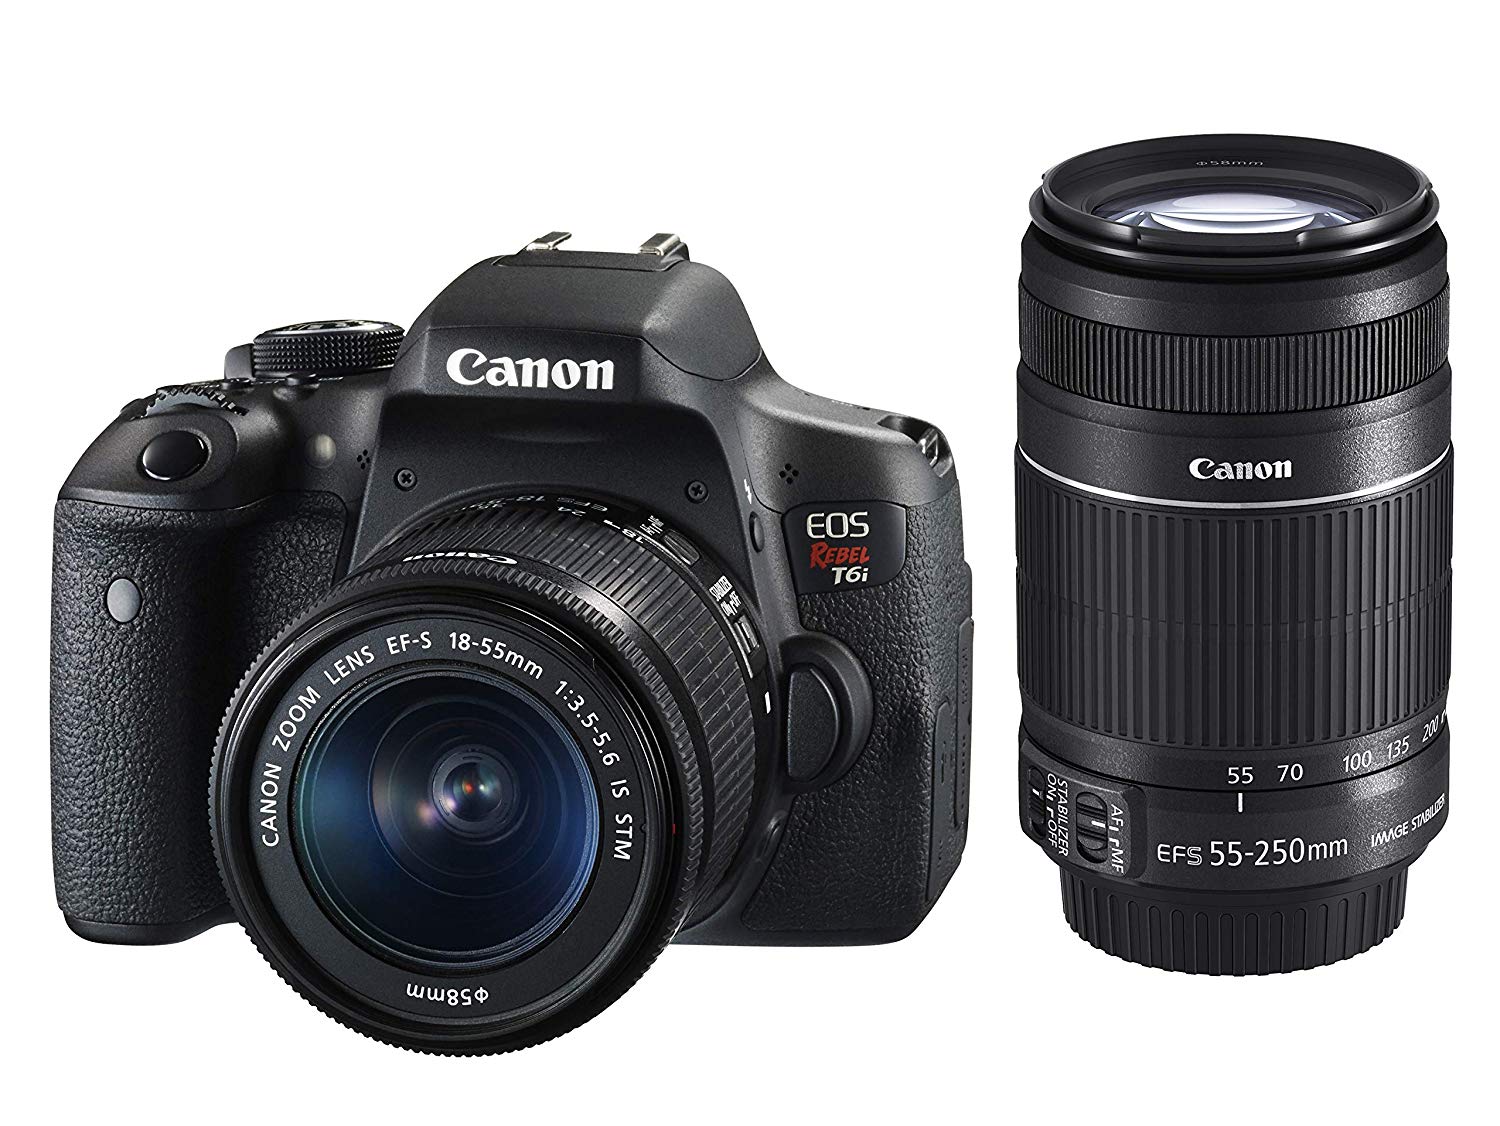 Kit Premium Canon Câmera Rebel T6i com Lente EF-S 18-55mm f/3.5-5.6 IS STM e EF-S 55-250mm f/4-5.6 IS STM